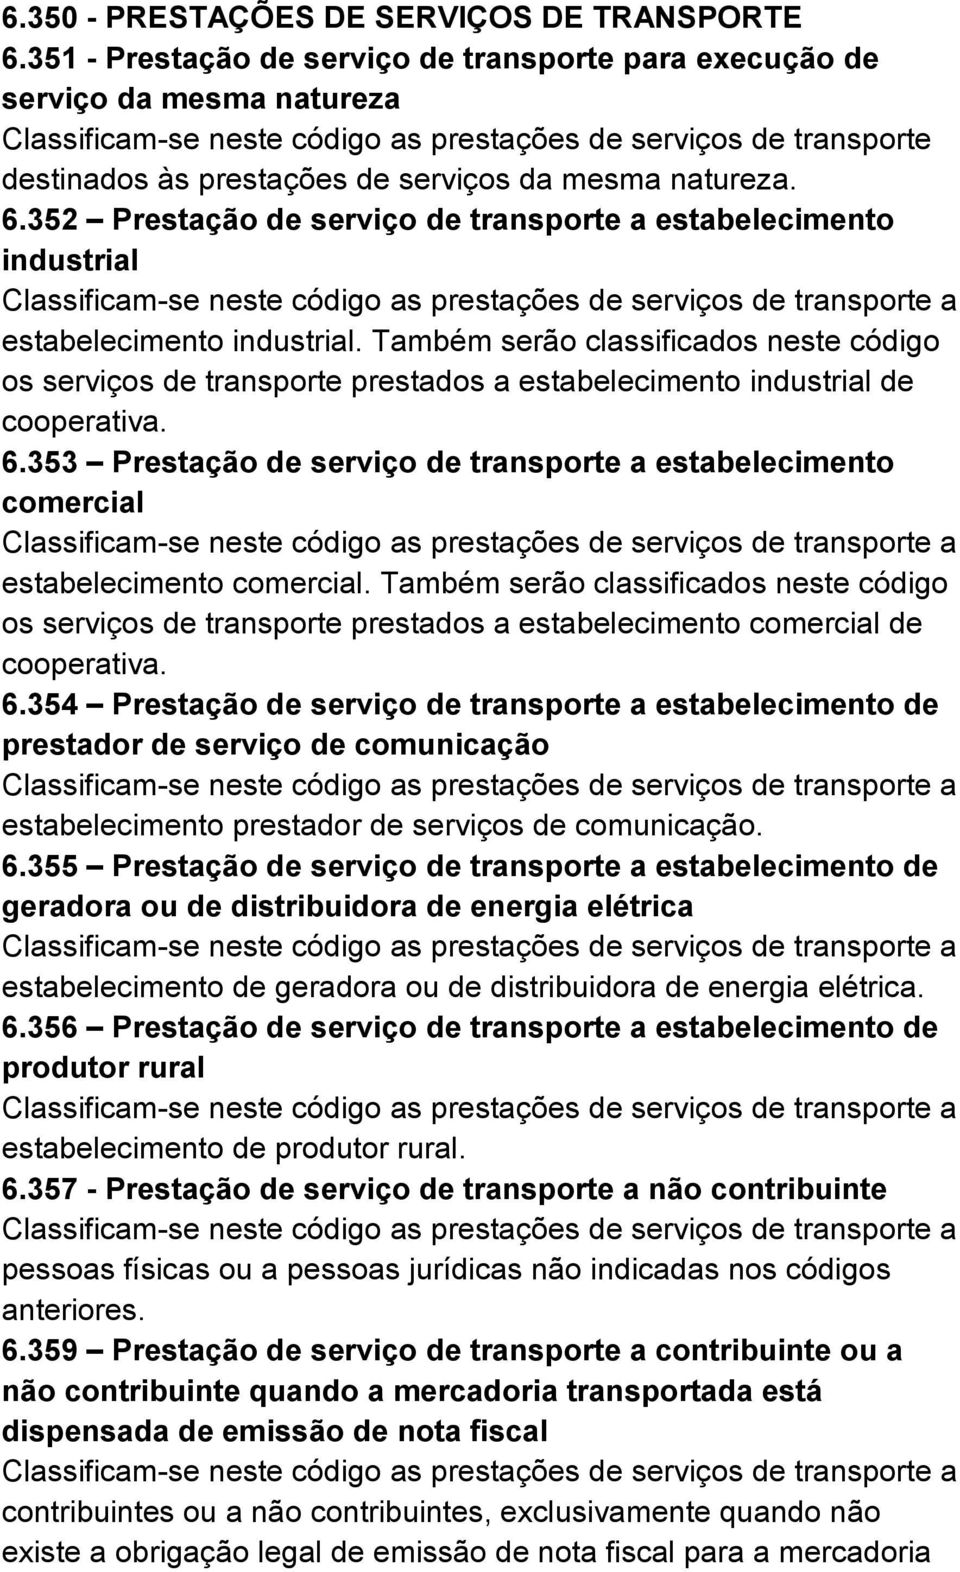 353 Prestação de serviço de transporte a estabelecimento comercial estabelecimento comercial.